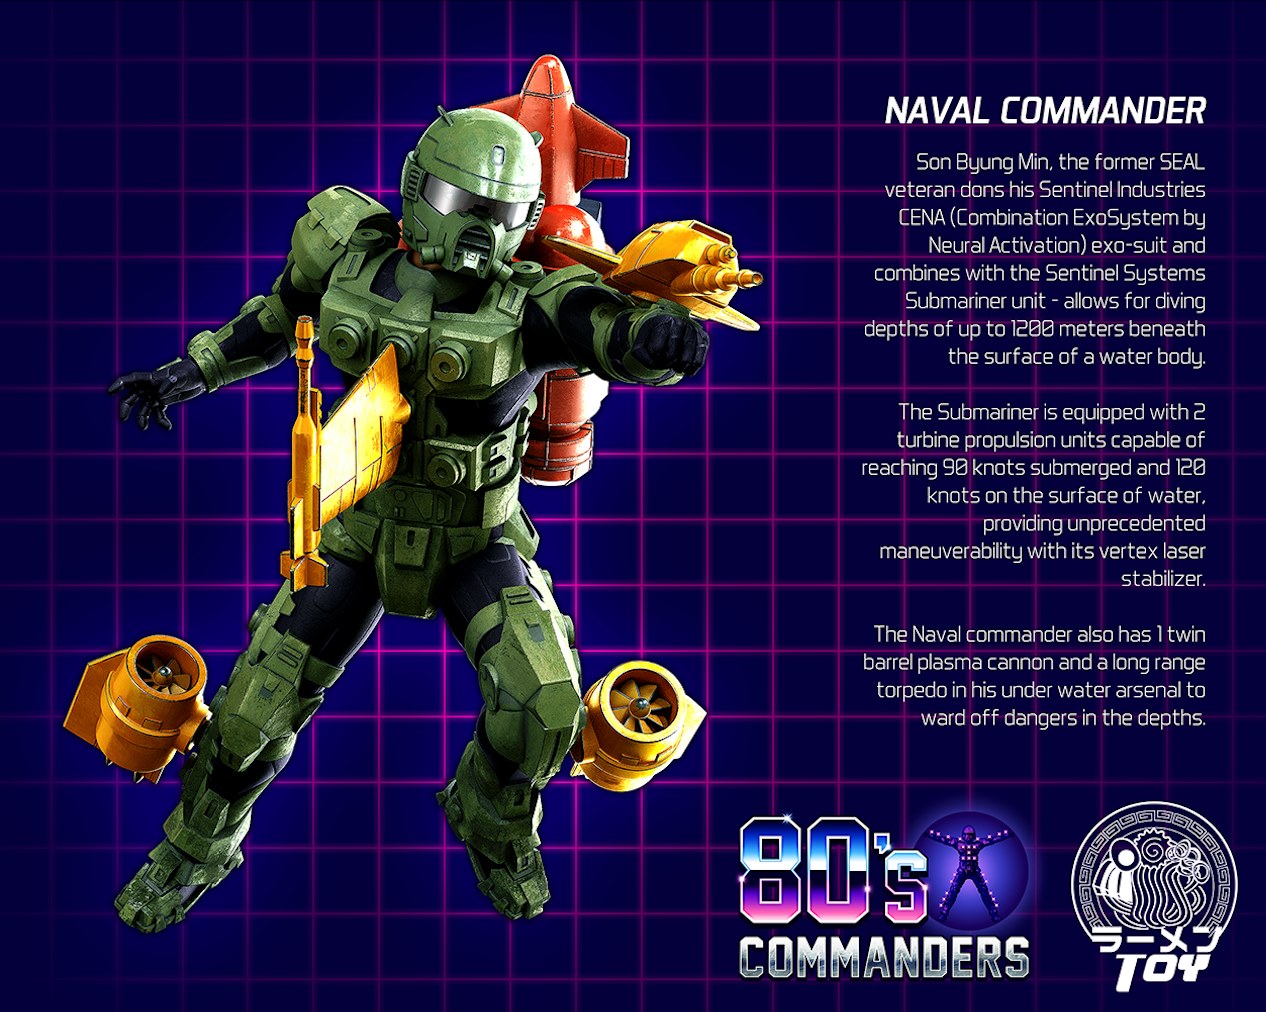 80s Commander - Naval Commander